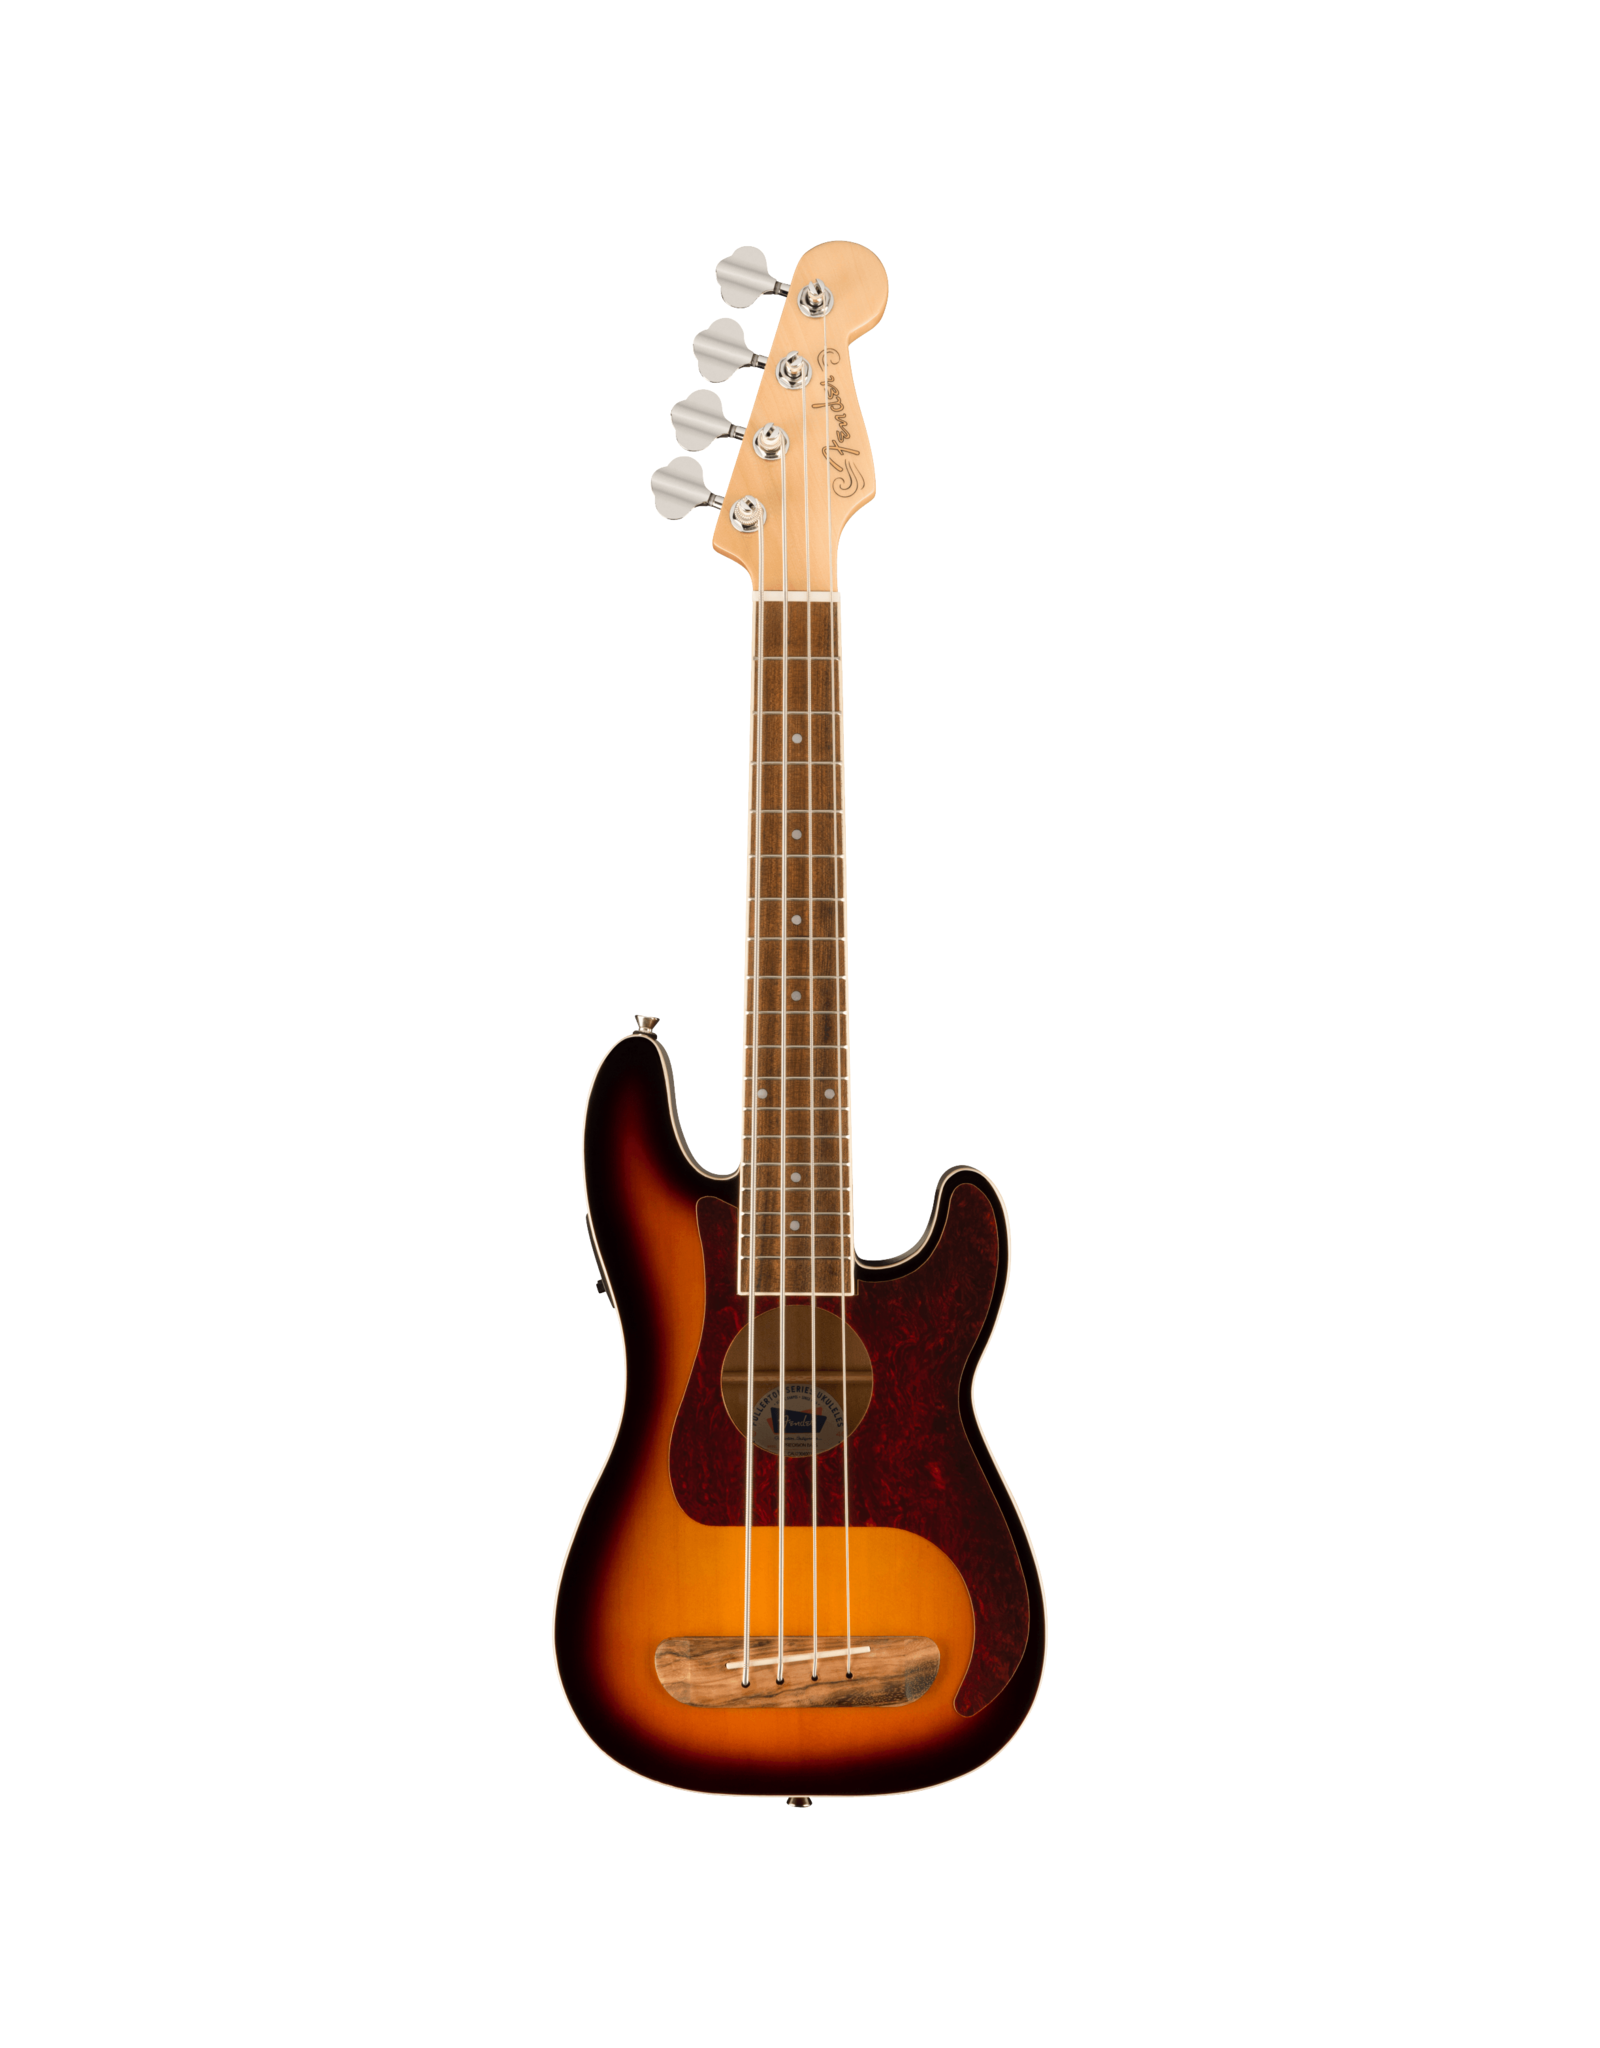 Fender Fender  Fullerton Precision Bass Uke, Tortoiseshell Pickguard, 3-Color Sunburst